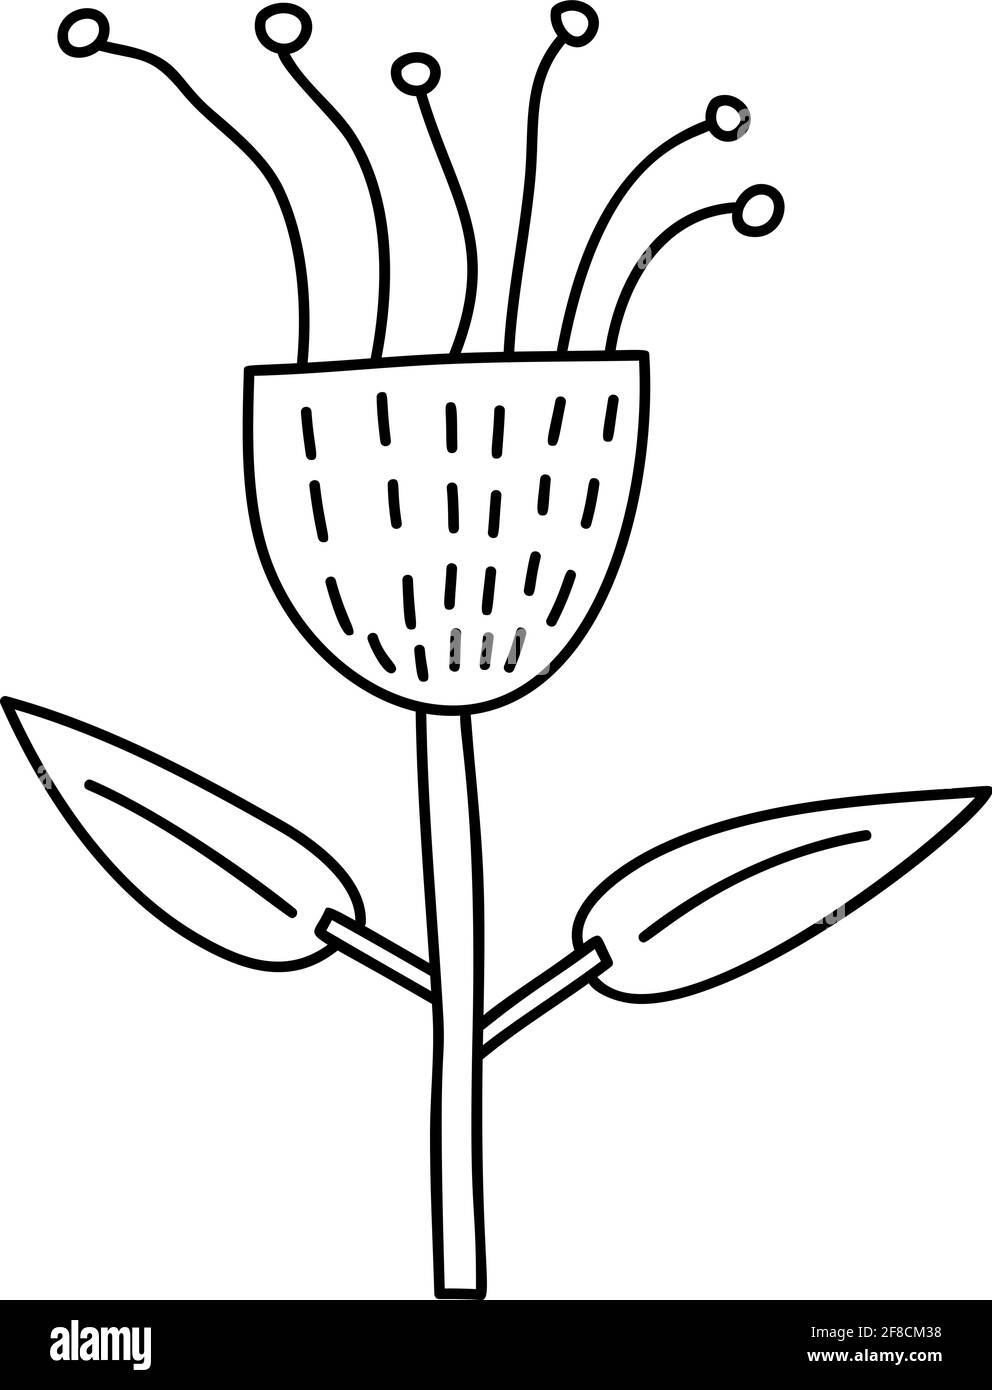 Fiore di primavera stilizzato vettoriale con monolina. Elemento grafico dell'illustrazione scandinava. Immagine floreale estate decorativa per il saluto Valentine Card o. Illustrazione Vettoriale